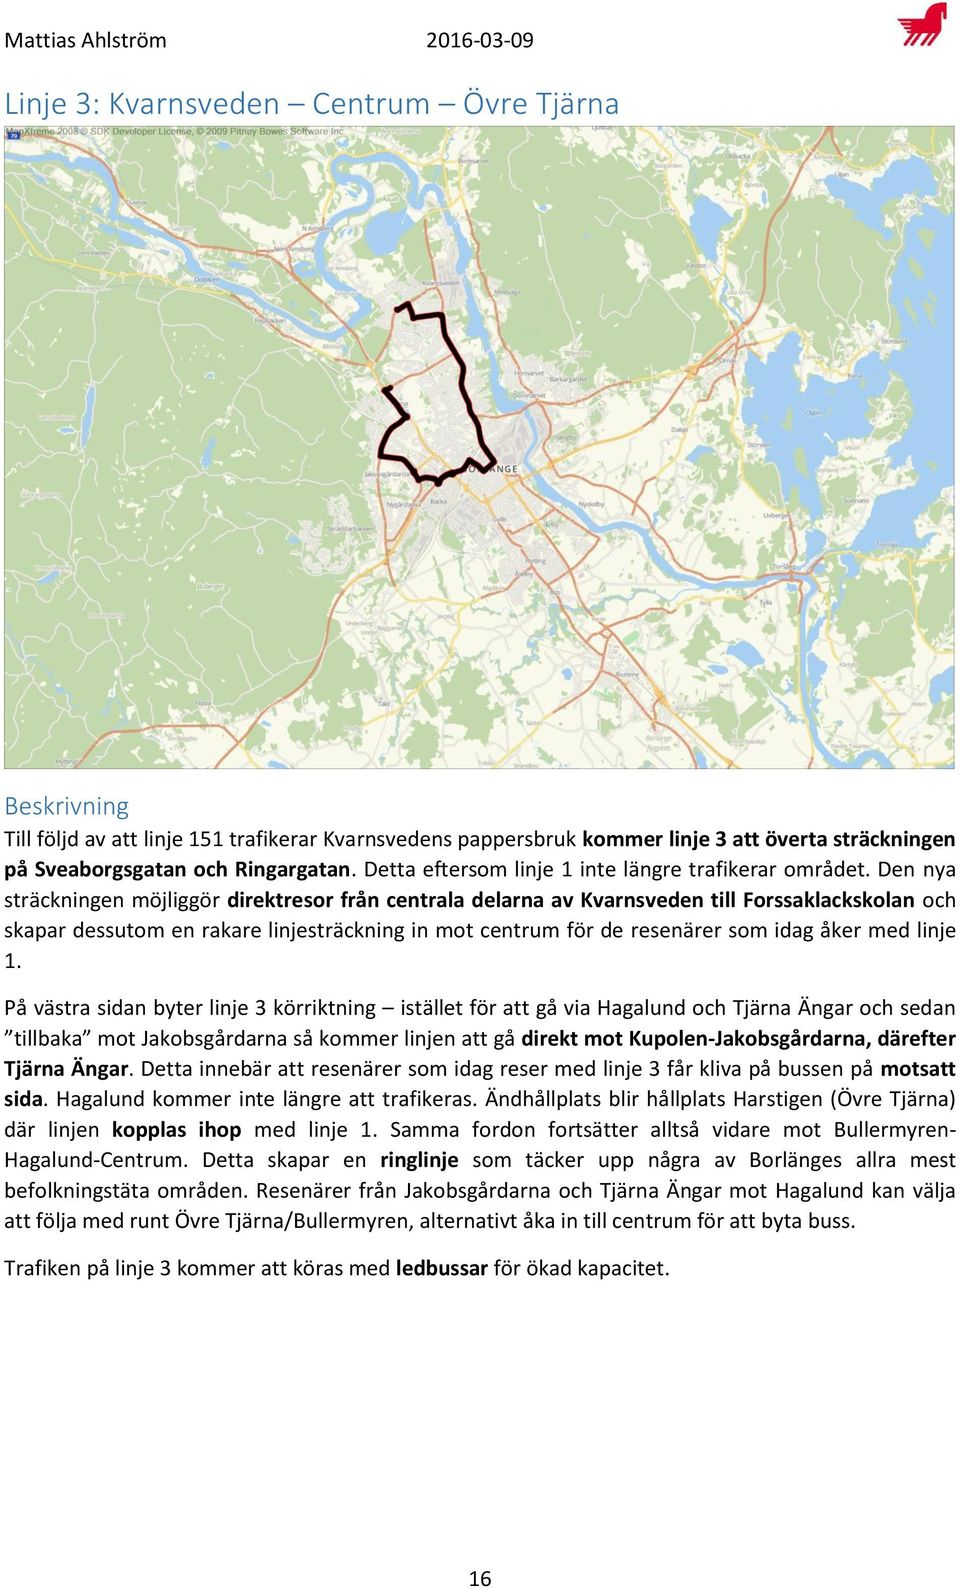 Den nya sträckningen möjliggör direktresor från centrala delarna av Kvarnsveden till Forssaklackskolan och skapar dessutom en rakare linjesträckning in mot centrum för de resenärer som idag åker med